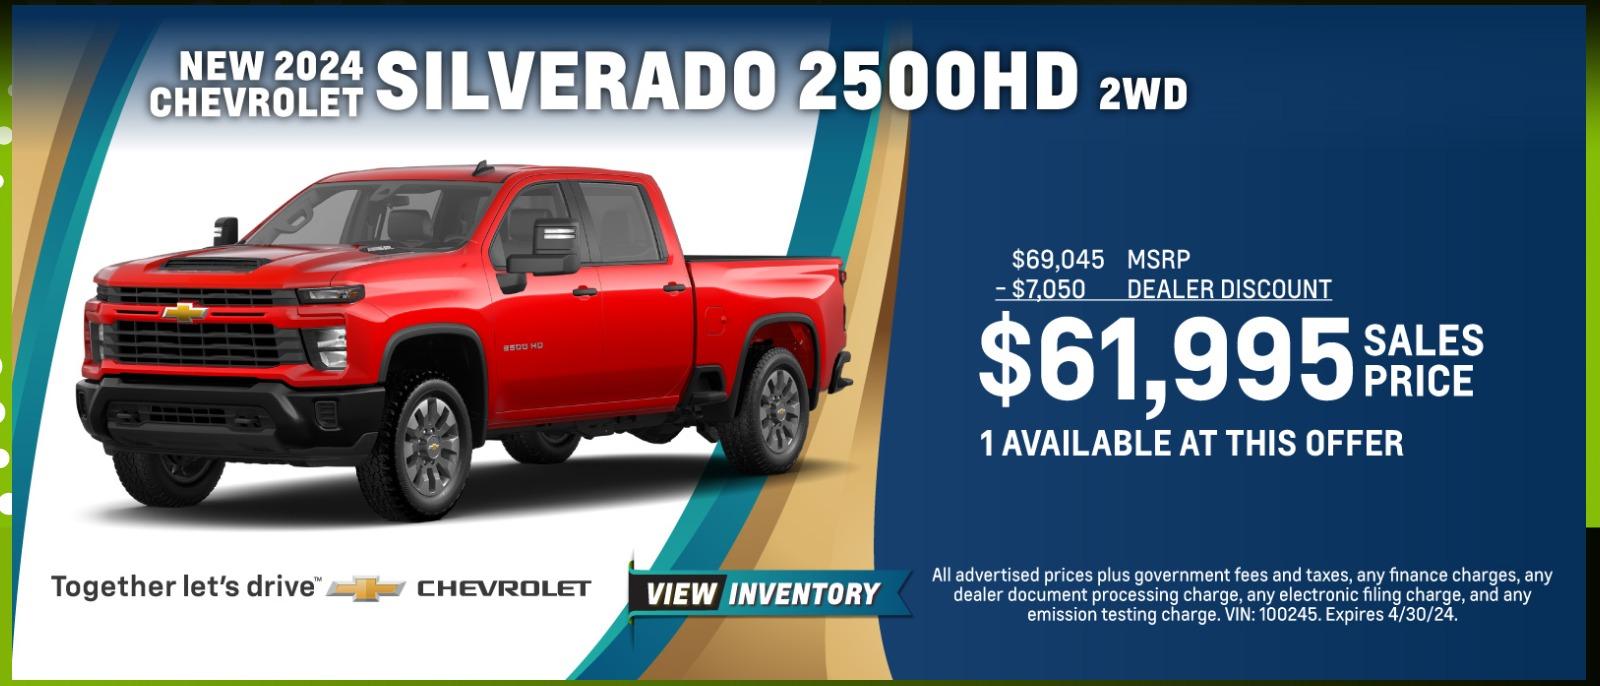 Get a New 2024 Silverado 2500HD